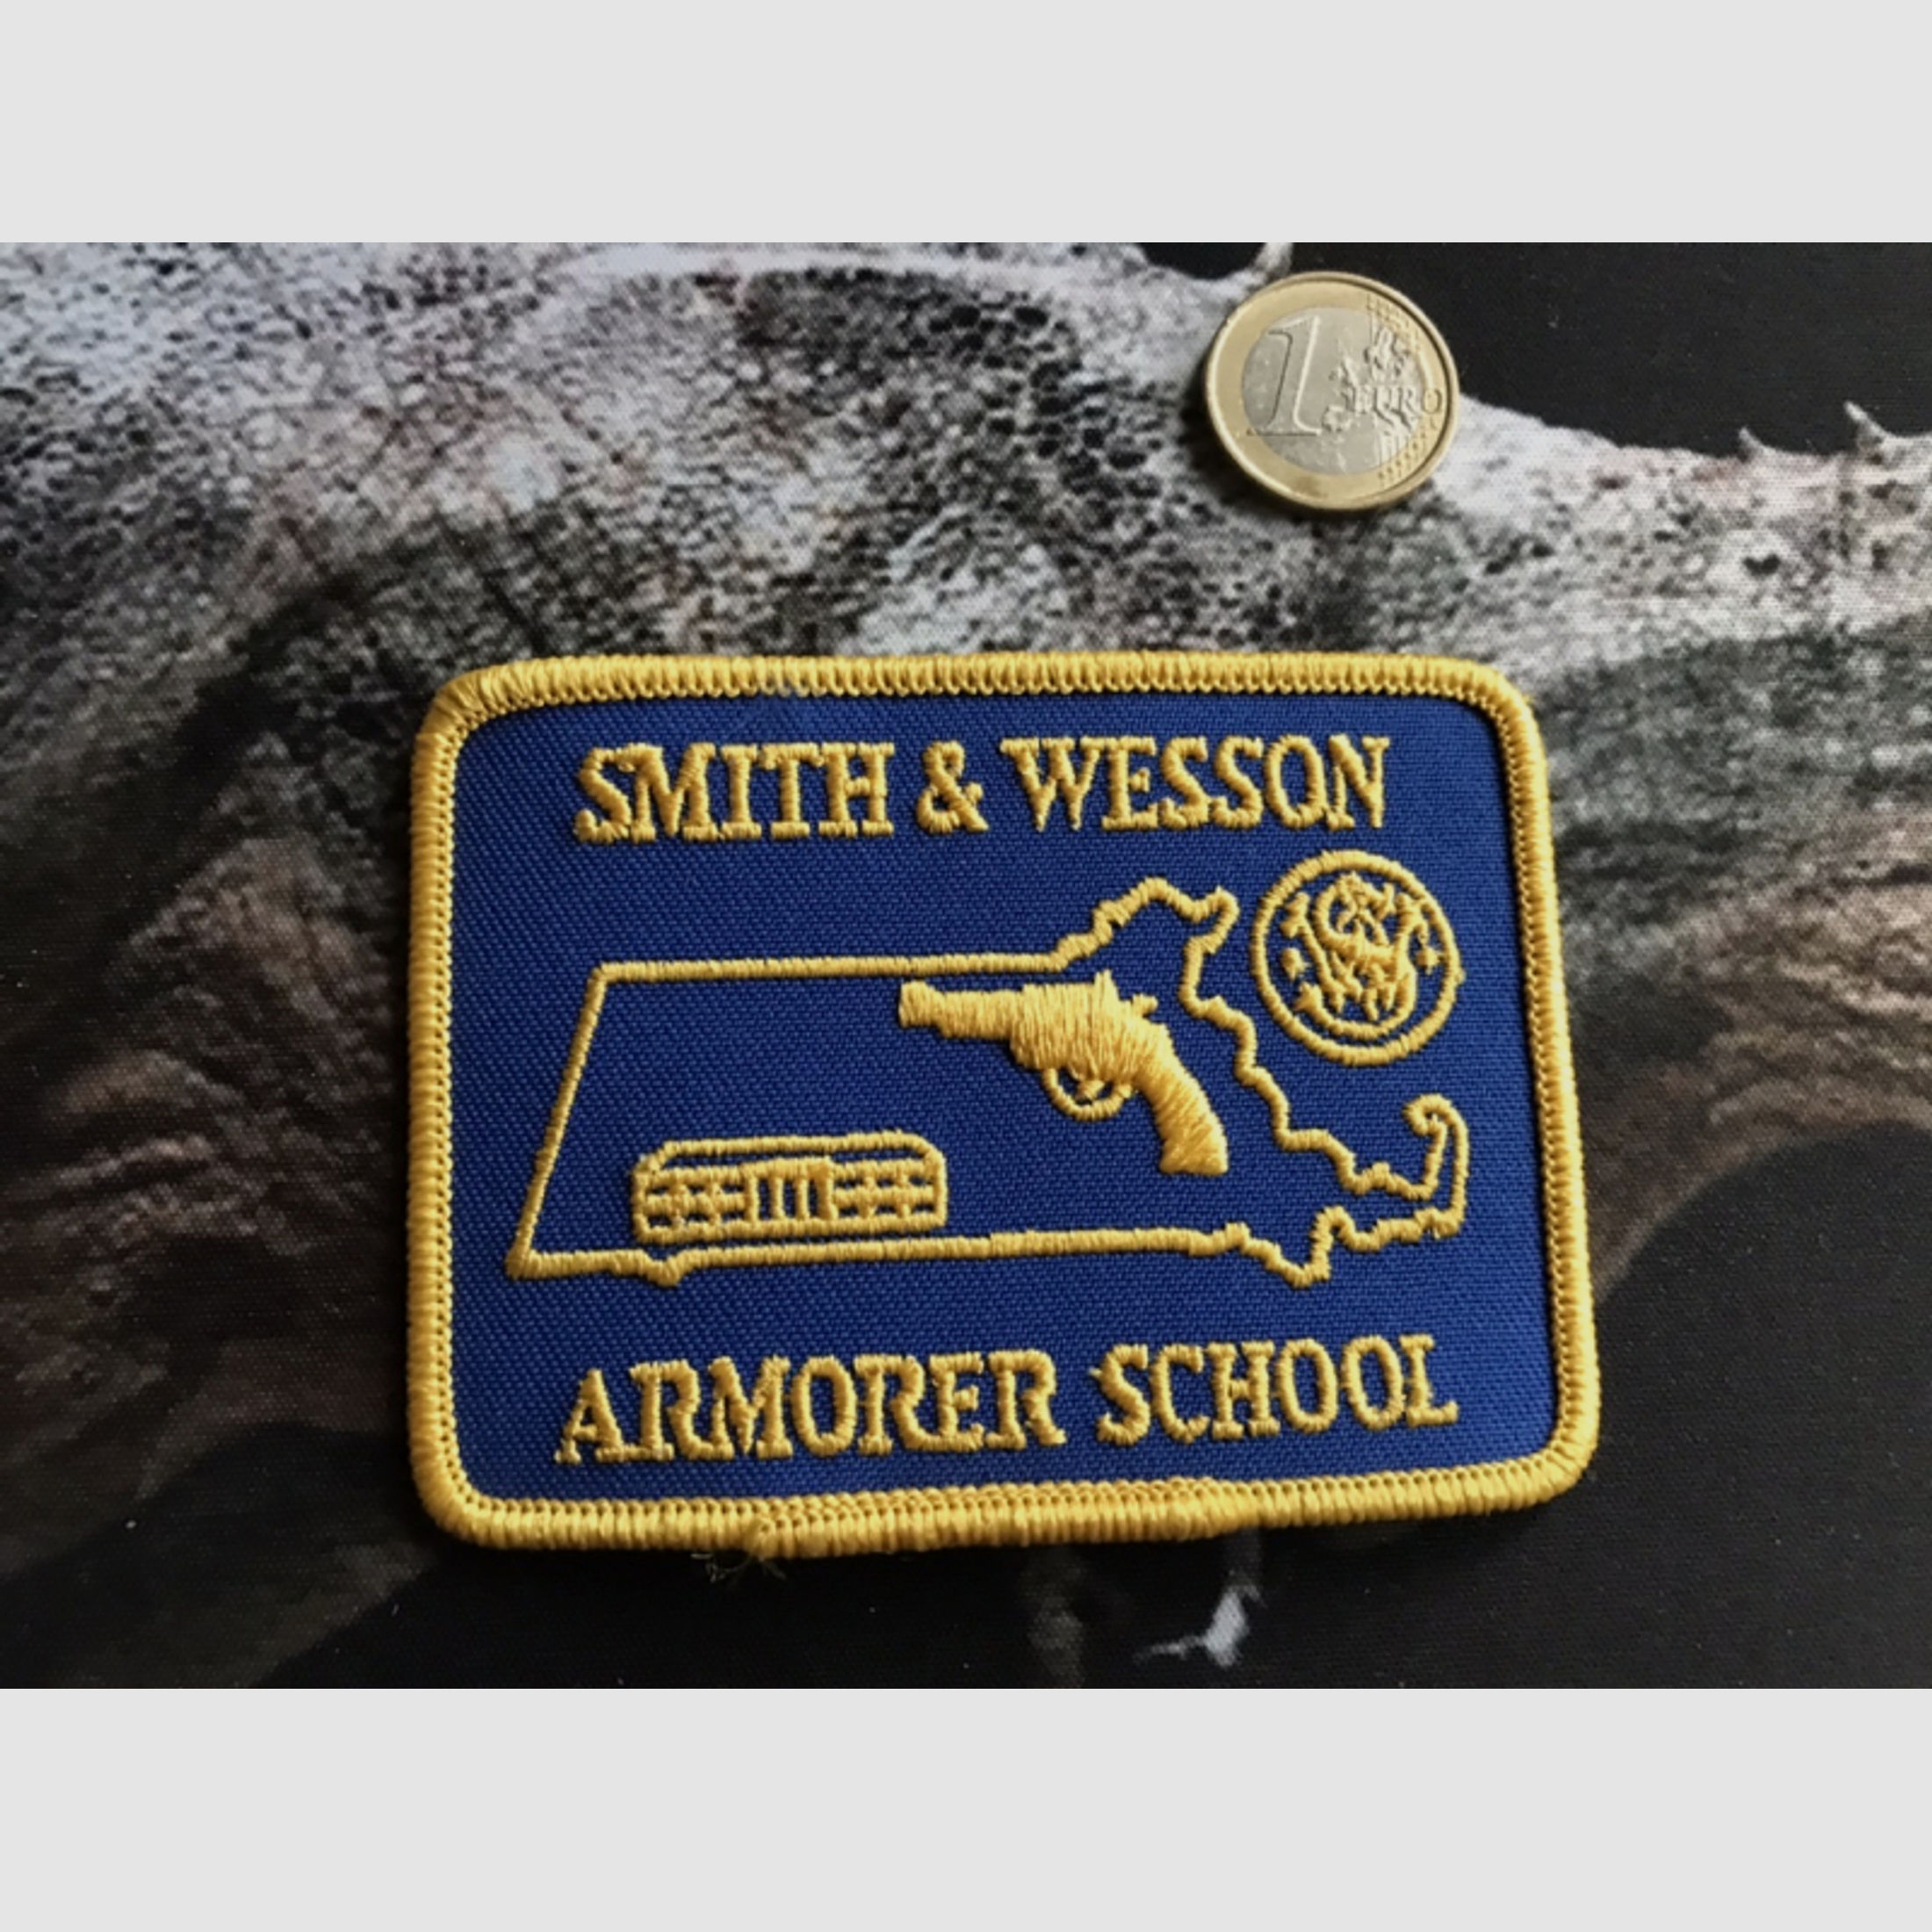 Aufnäher Patch Smith&Wesson, Armorer School, sehr selten